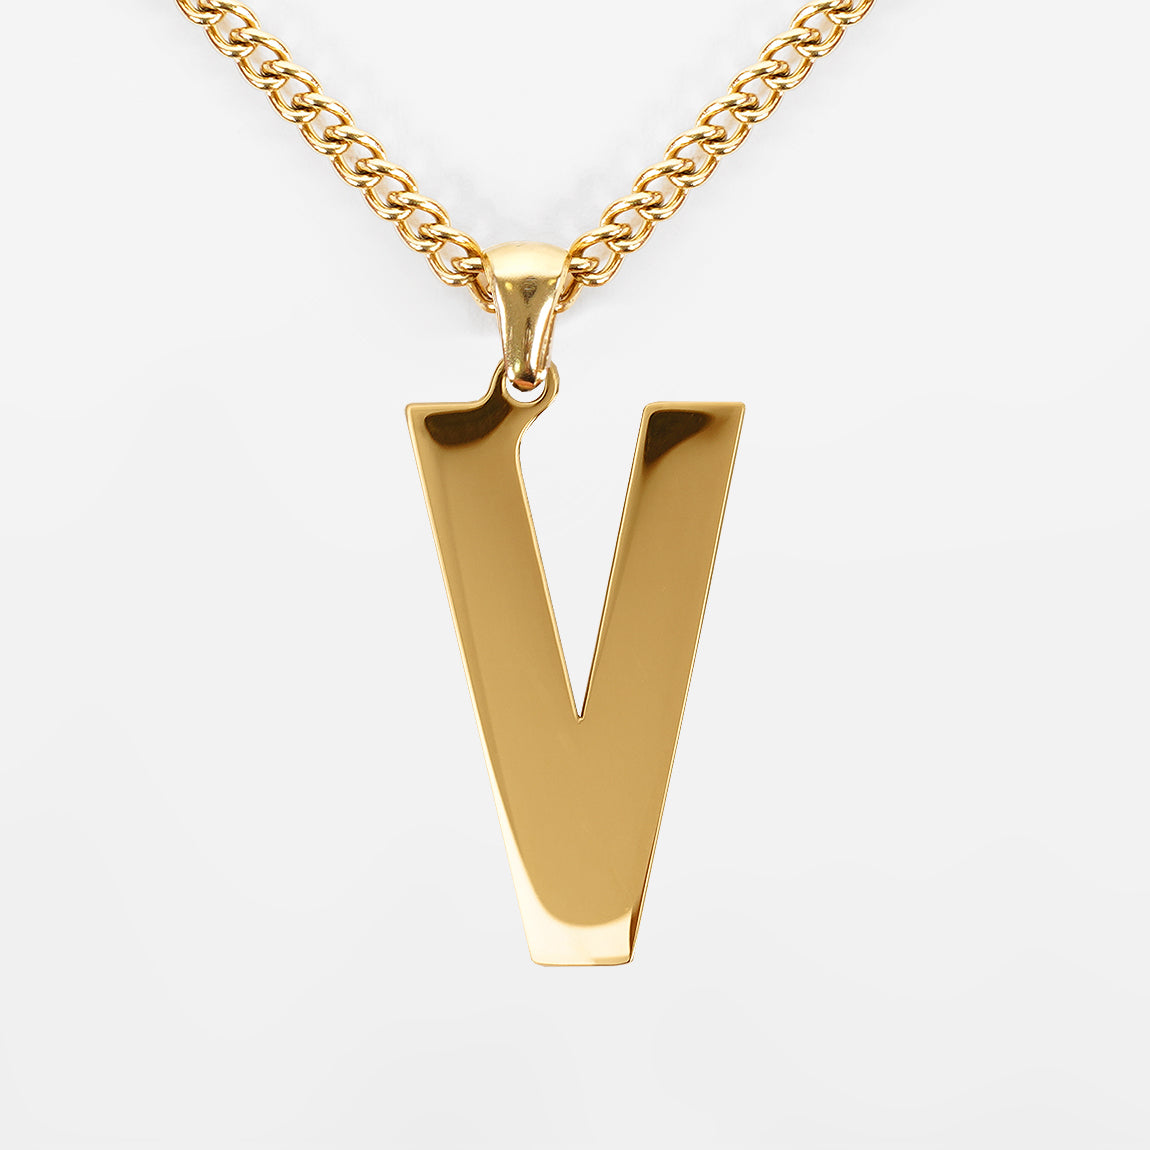 Letter V Necklace Gold Pendant  Stainless Steel Necklace V